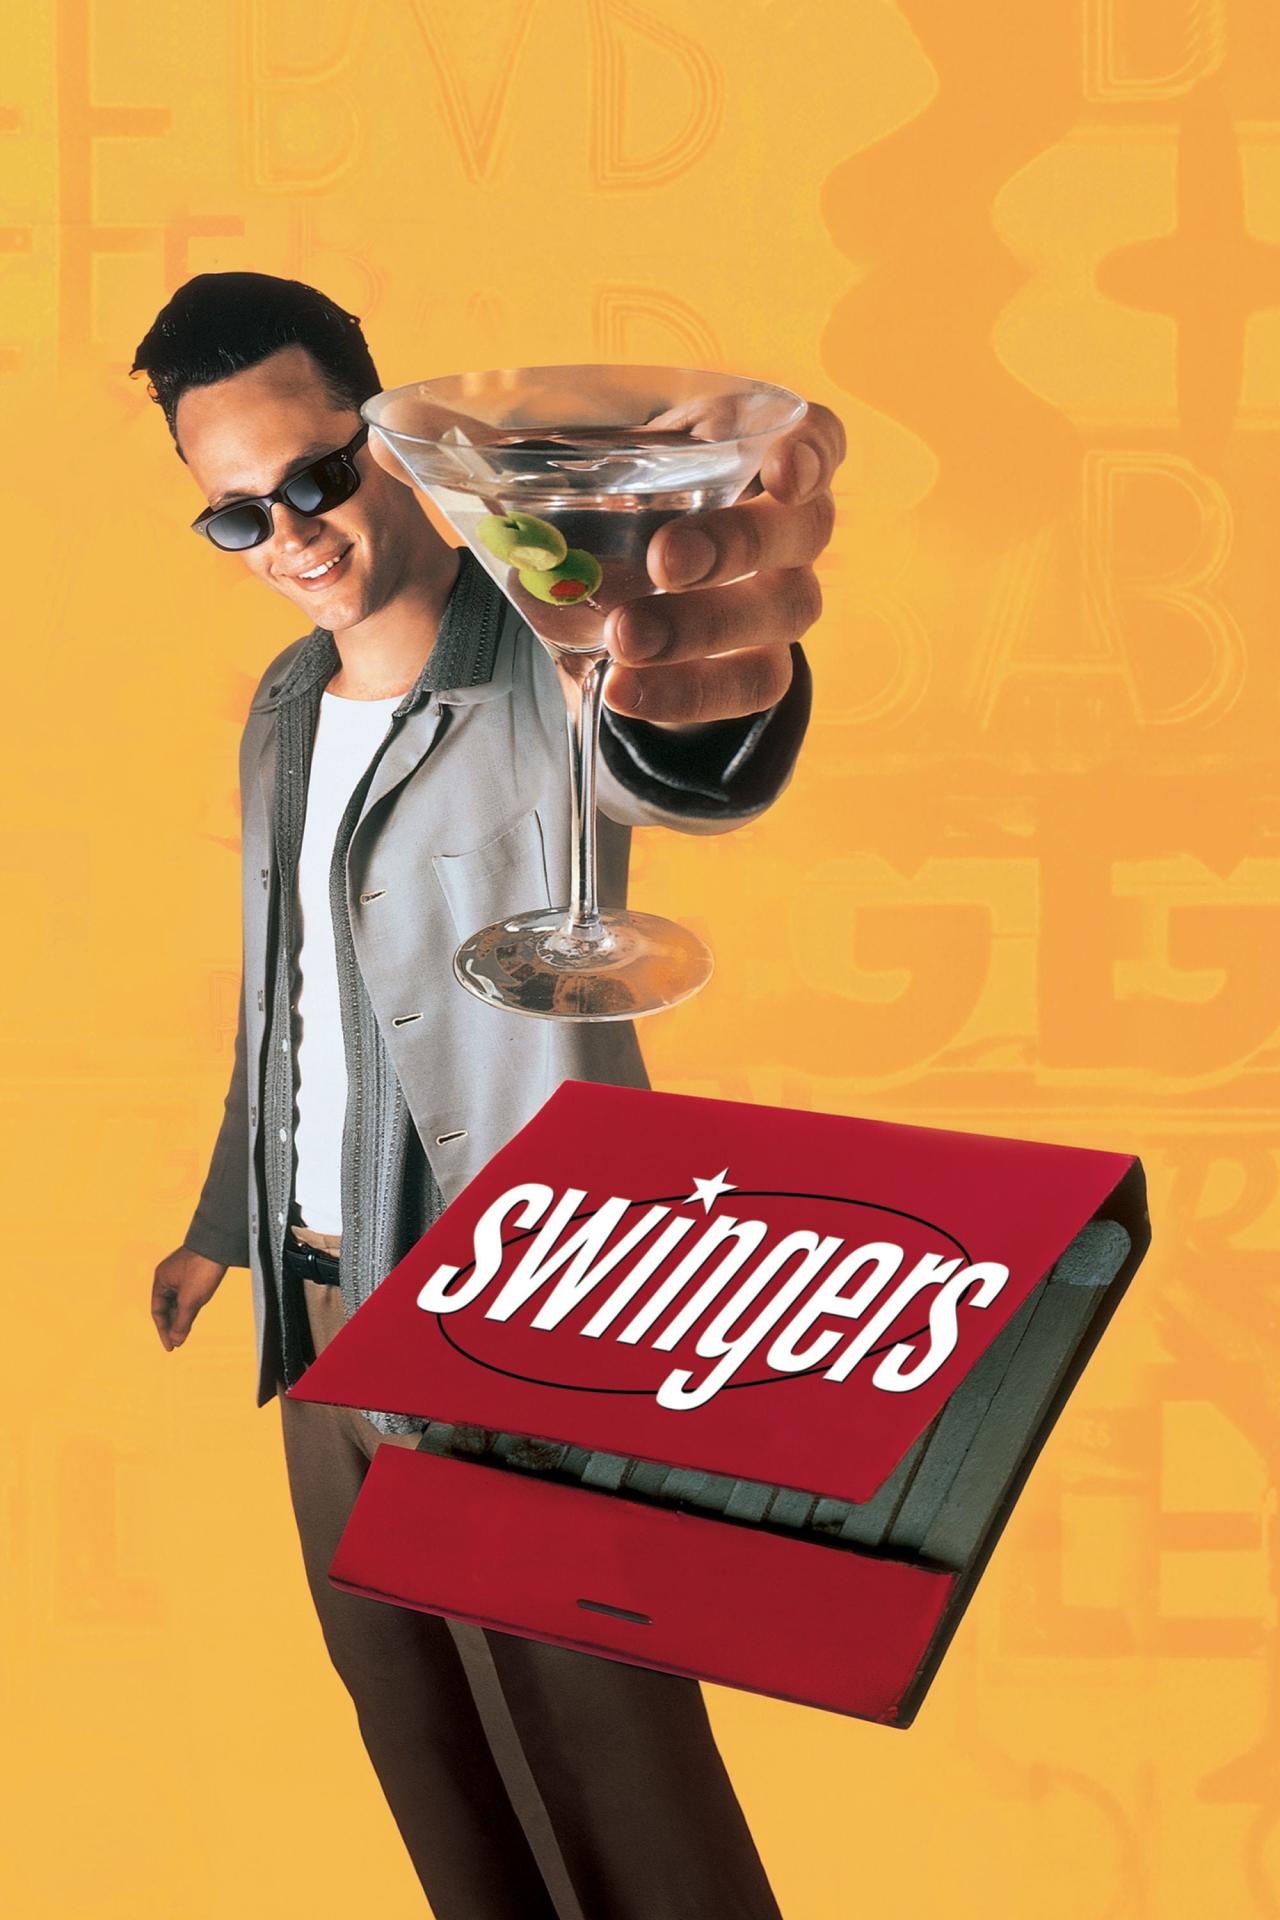 Swingers est-il disponible sur Netflix ou autre ?